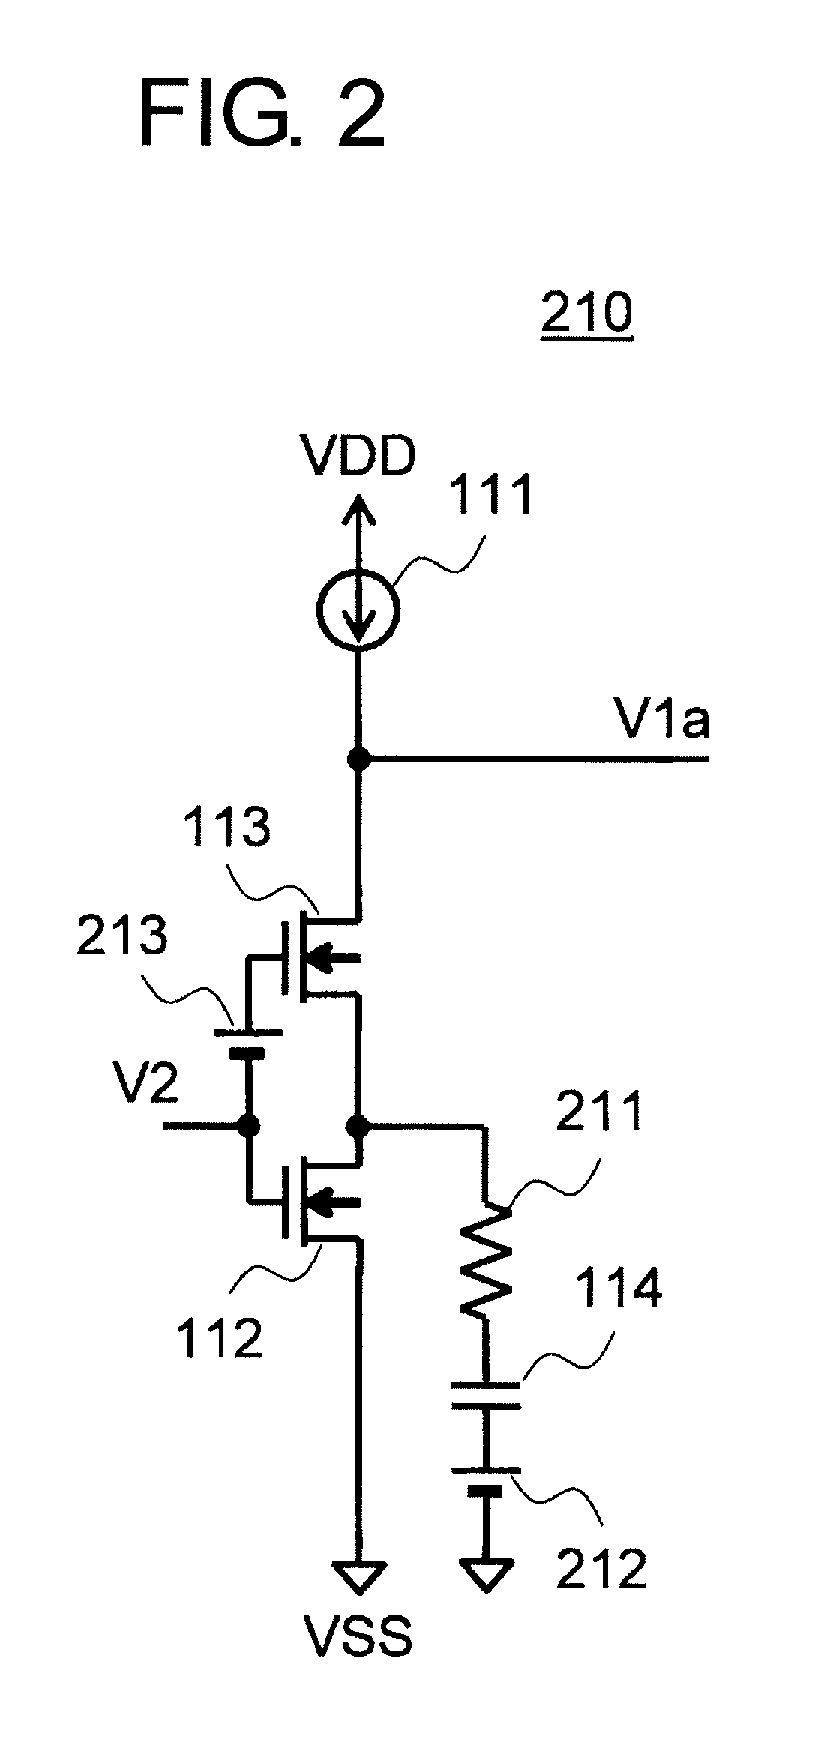 Amplifier circuit and voltage regulator